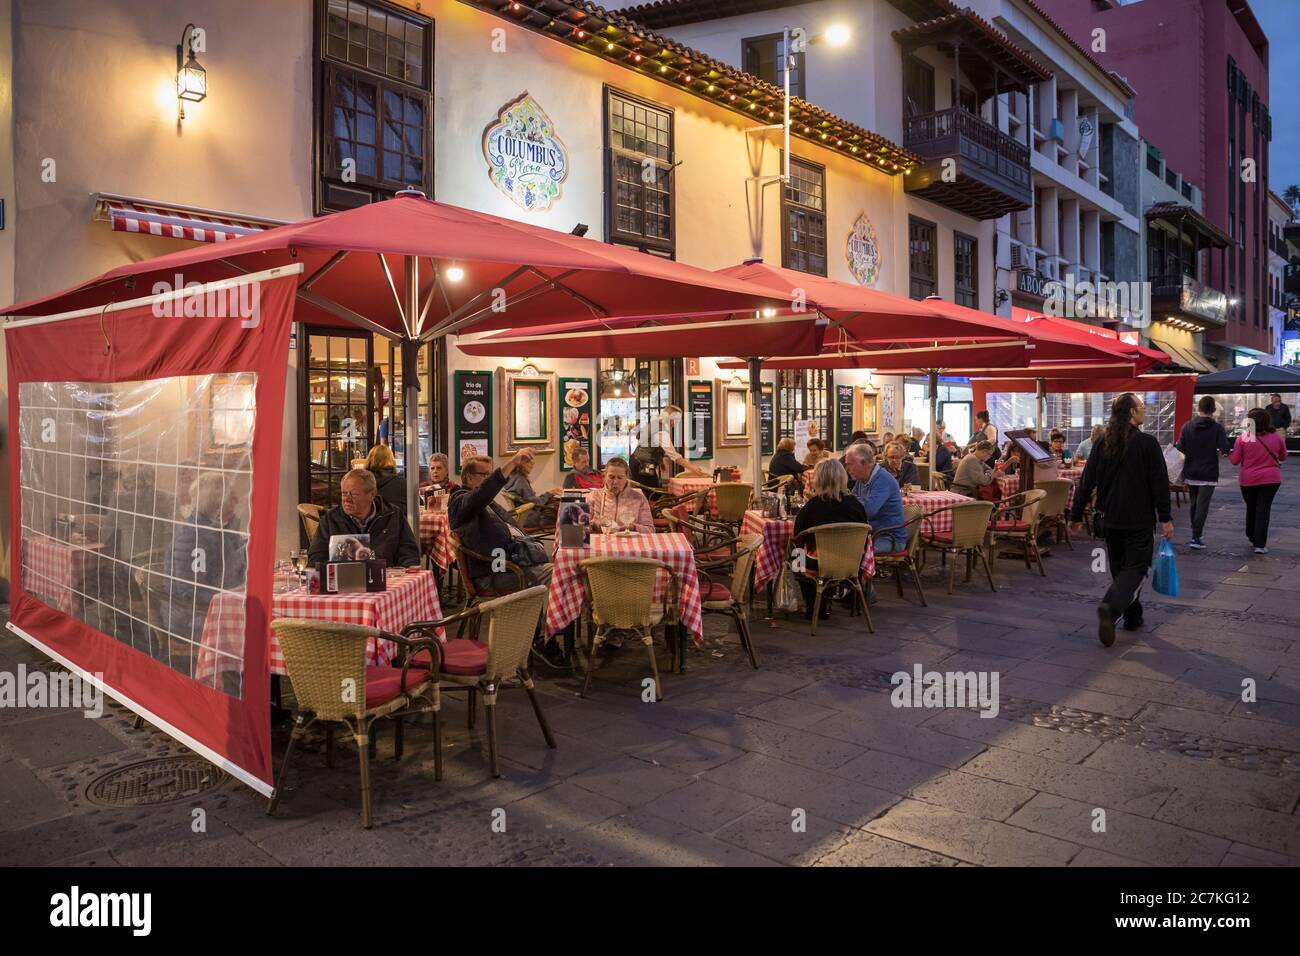 Restaurante Columbus en Plaza del Charco, Puerto de la Cruz, Tenerife,  Islas Canarias, España Fotografía de stock - Alamy